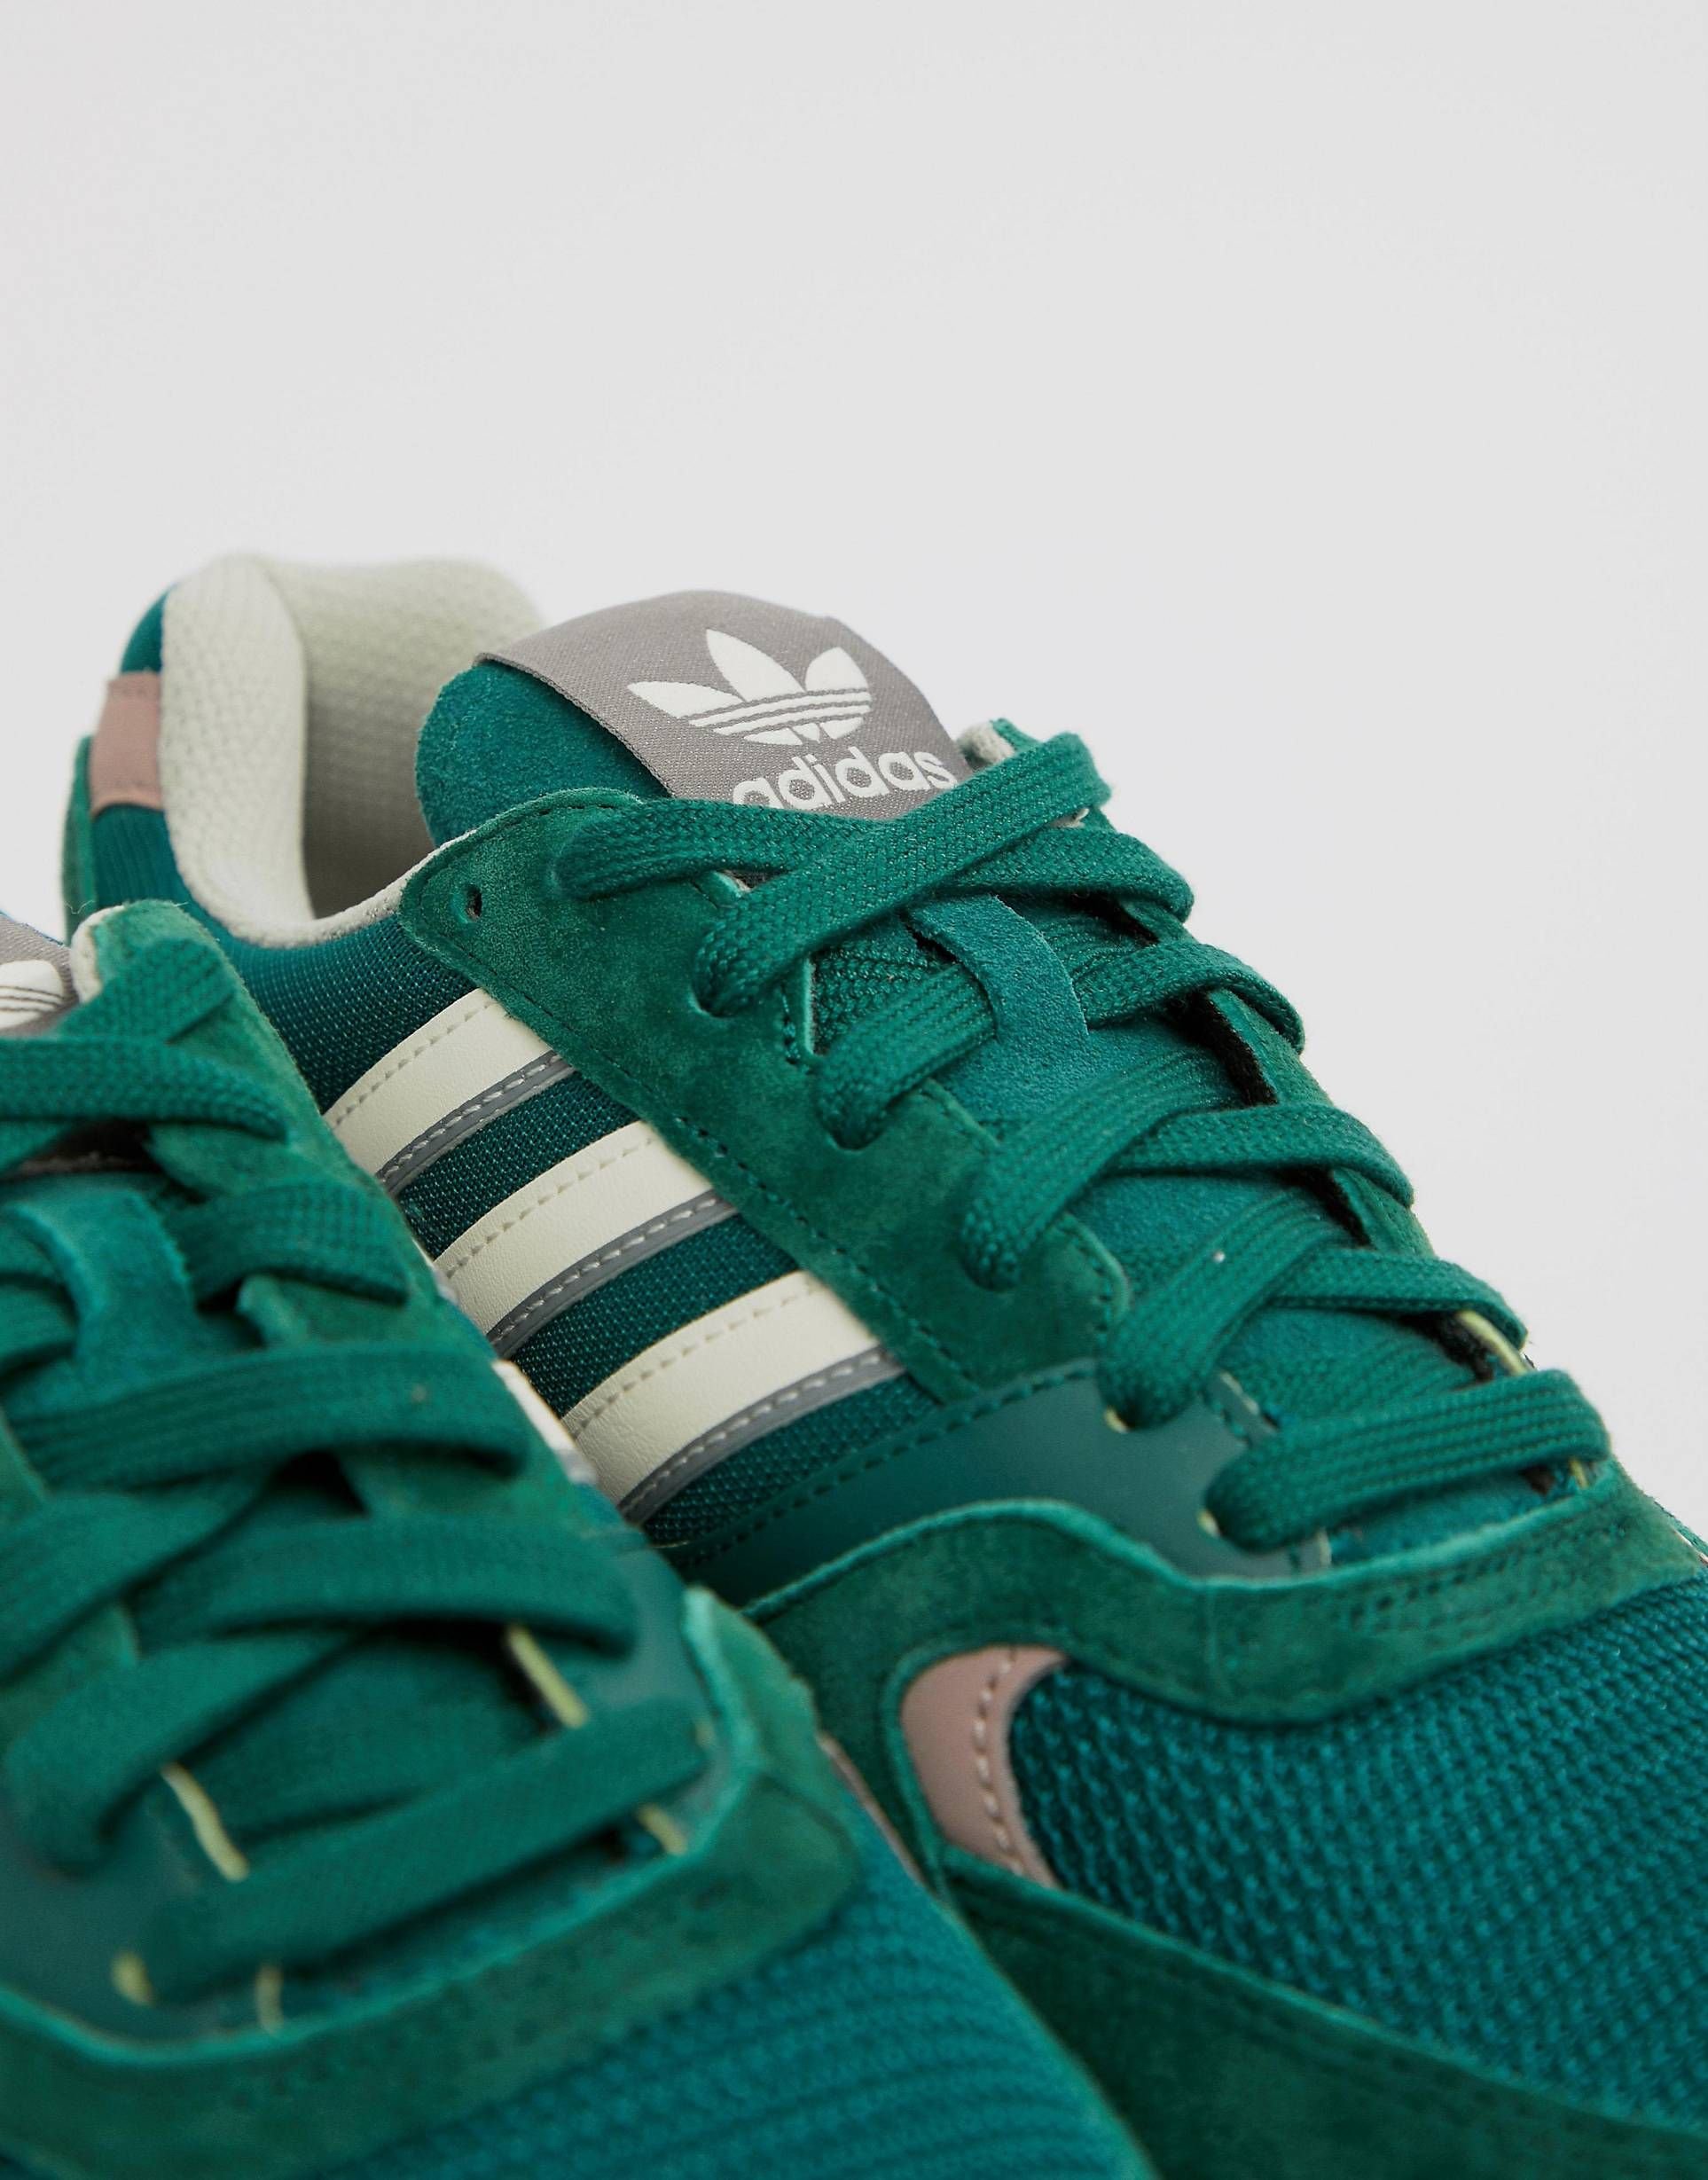 Сине зеленые кроссовки. Adidas Originals кроссовки зеленые. Адидас зеленые кроссовки 2000. Адидас ориджинал зеленые. Adidas Quesence Green.